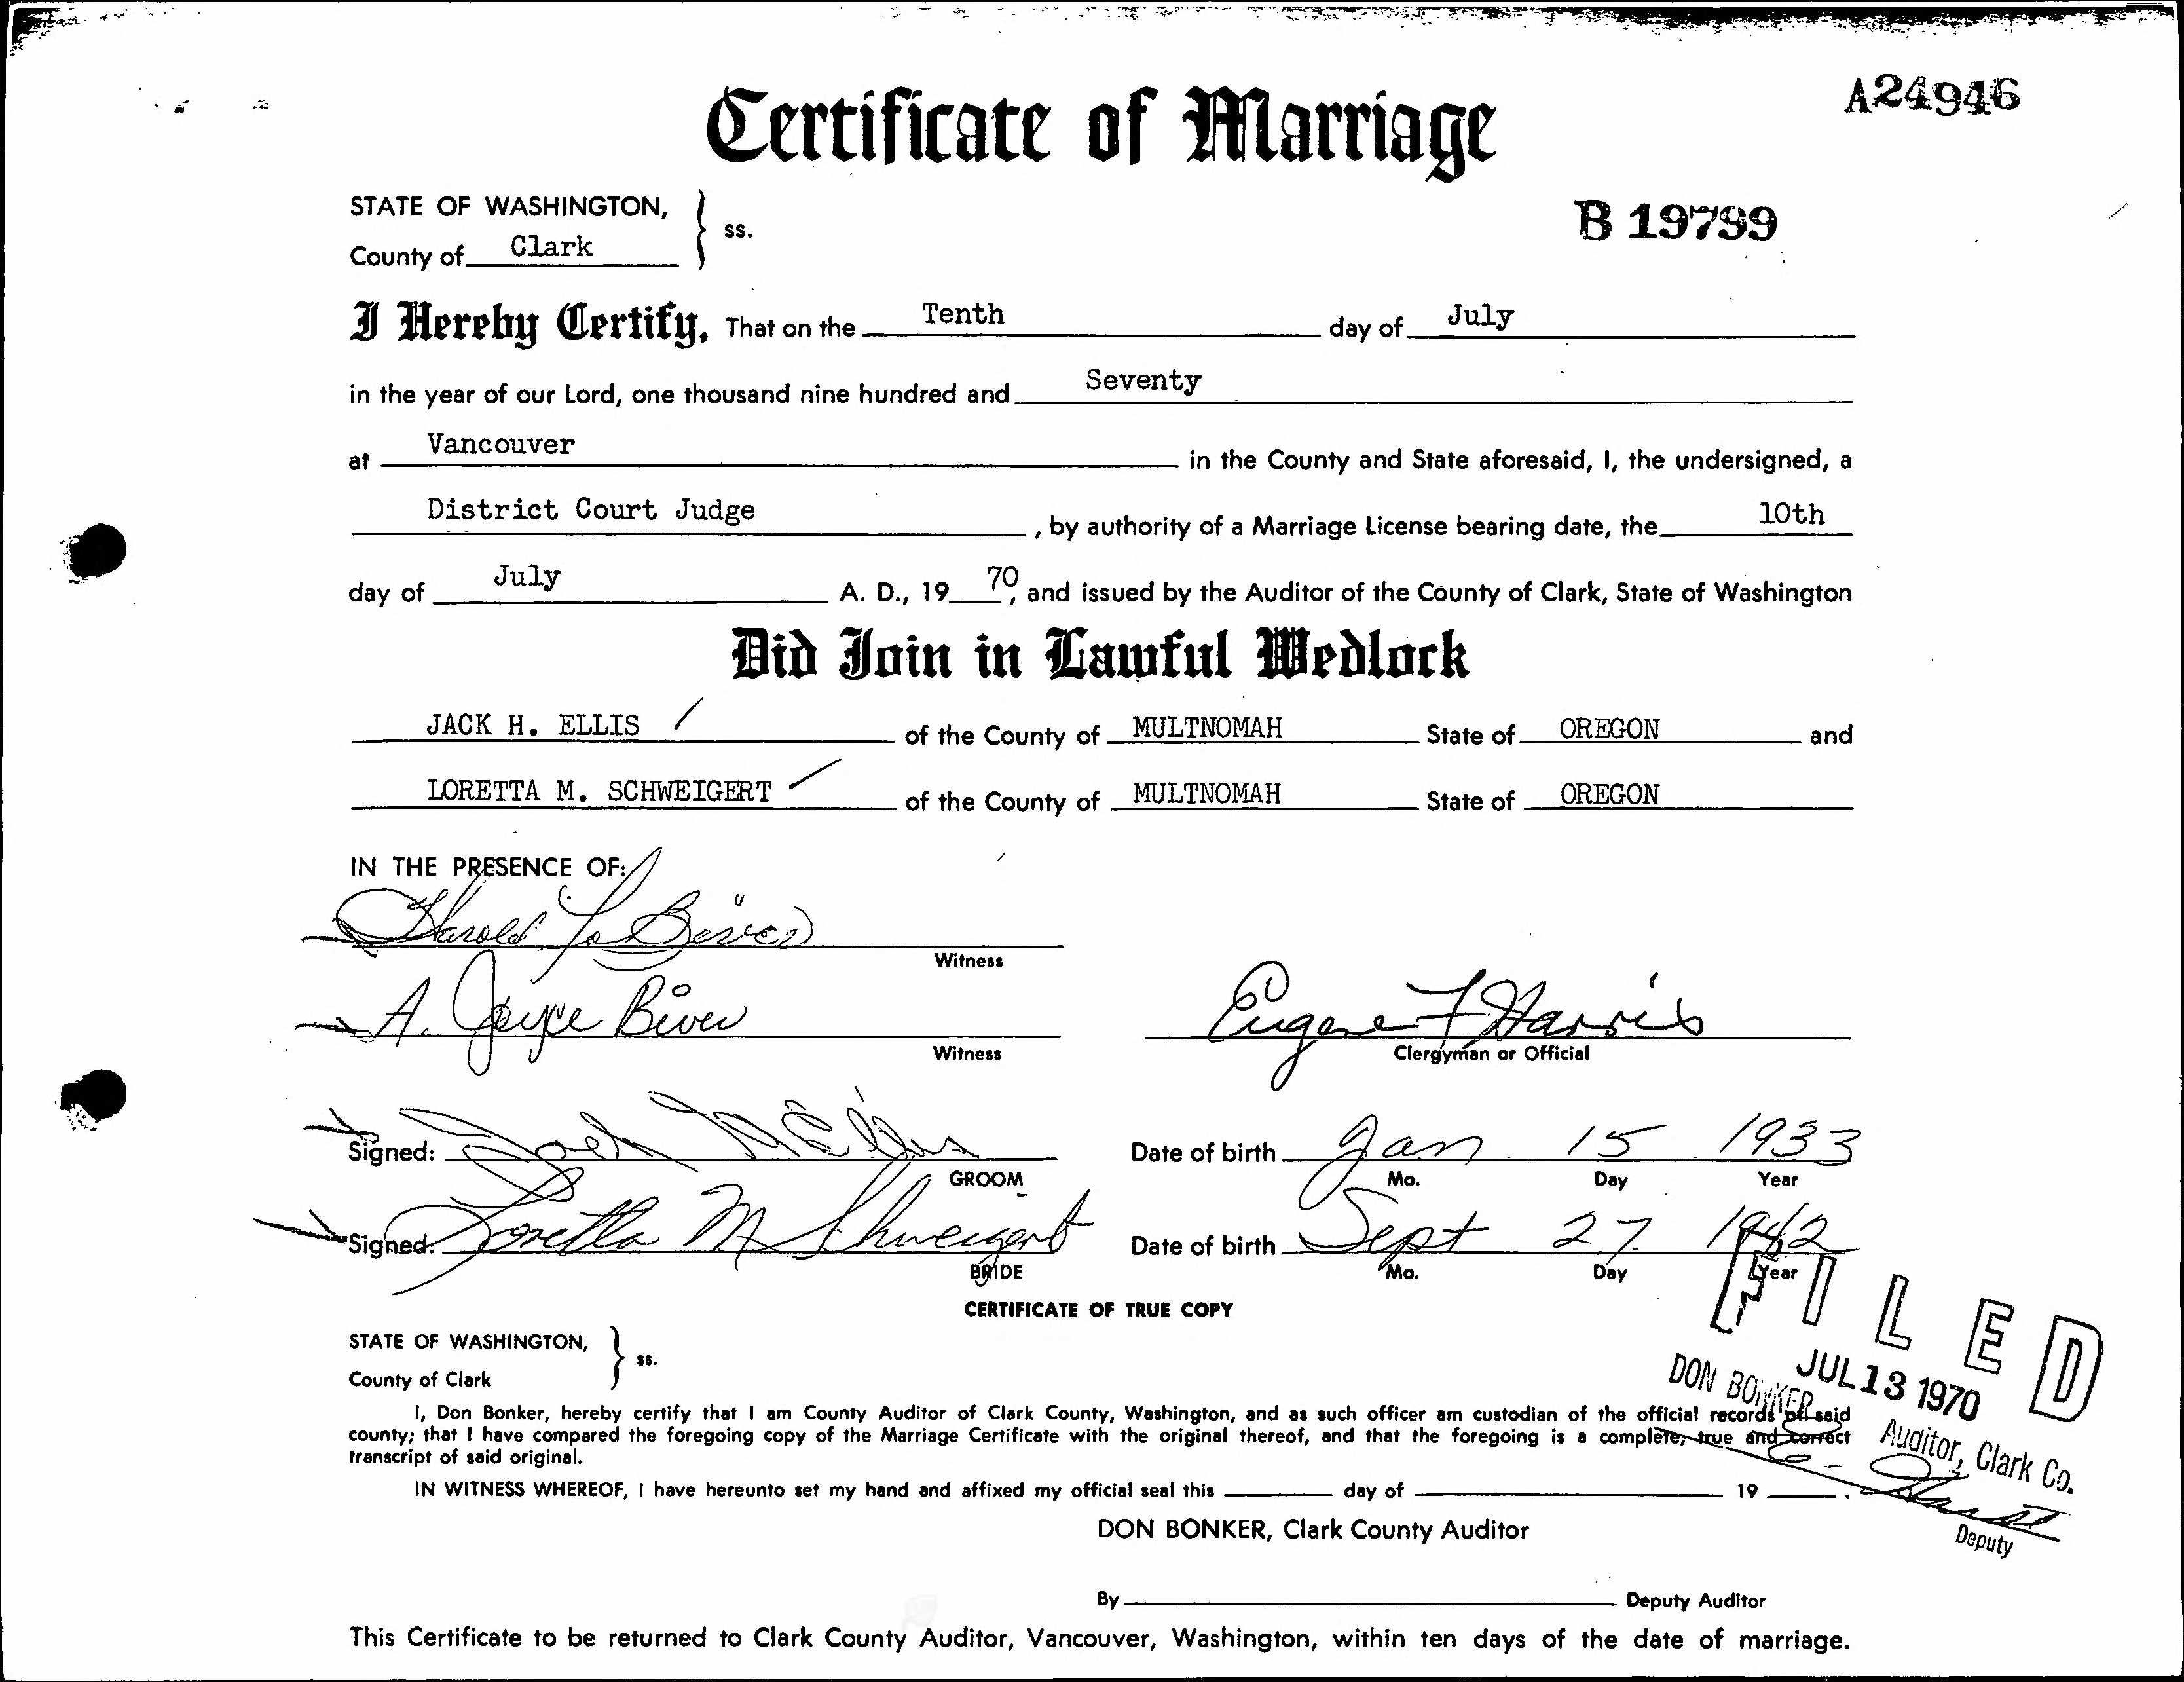 Certificate of Marriage ~ Schweigert & Ellis